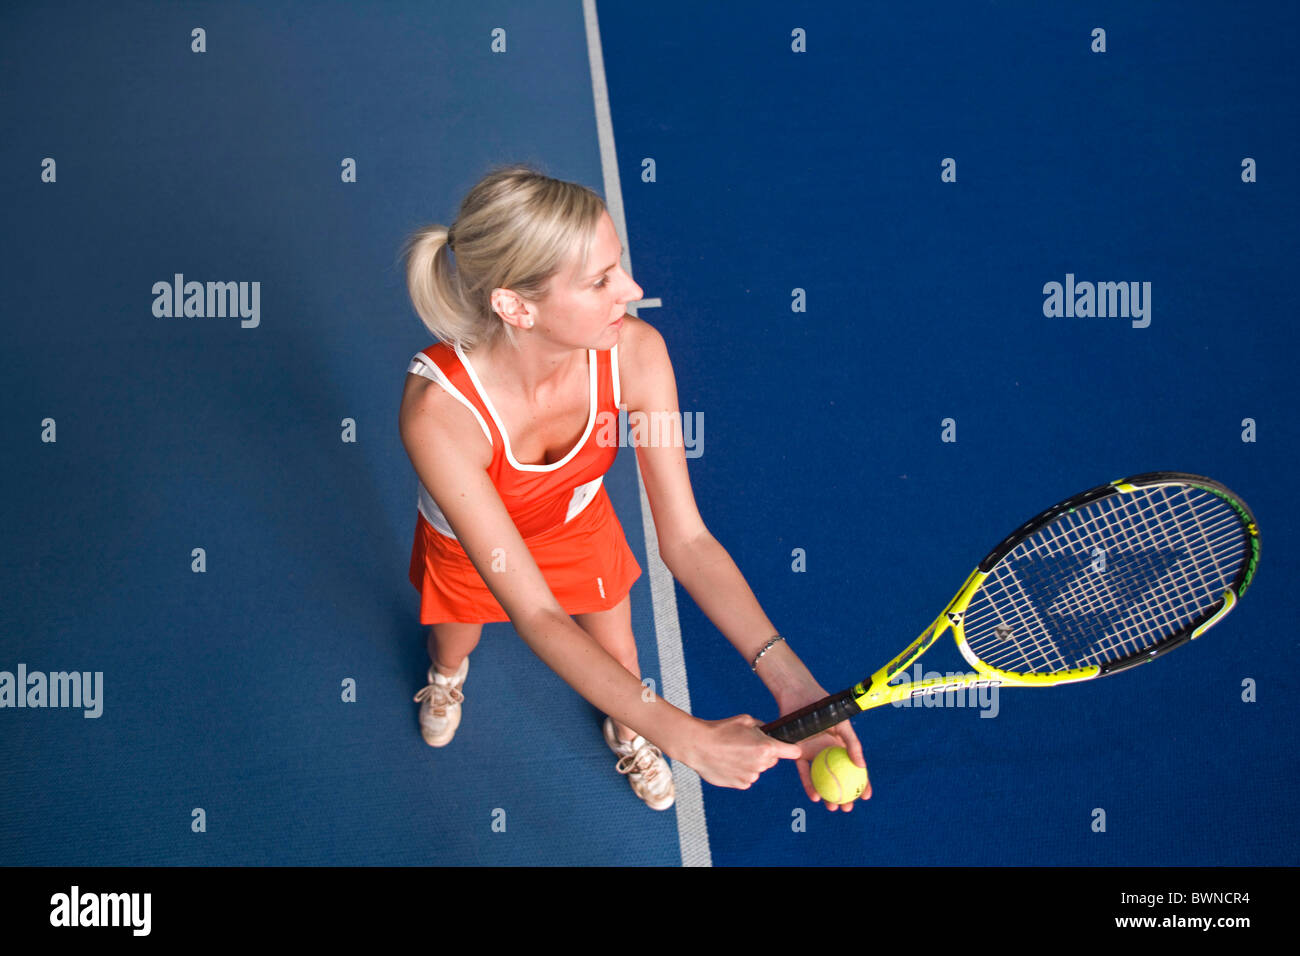 Autriche Europe Tennis Haute Autriche Ried tennis couvert femme robe rouge grève course raquette frappant Banque D'Images